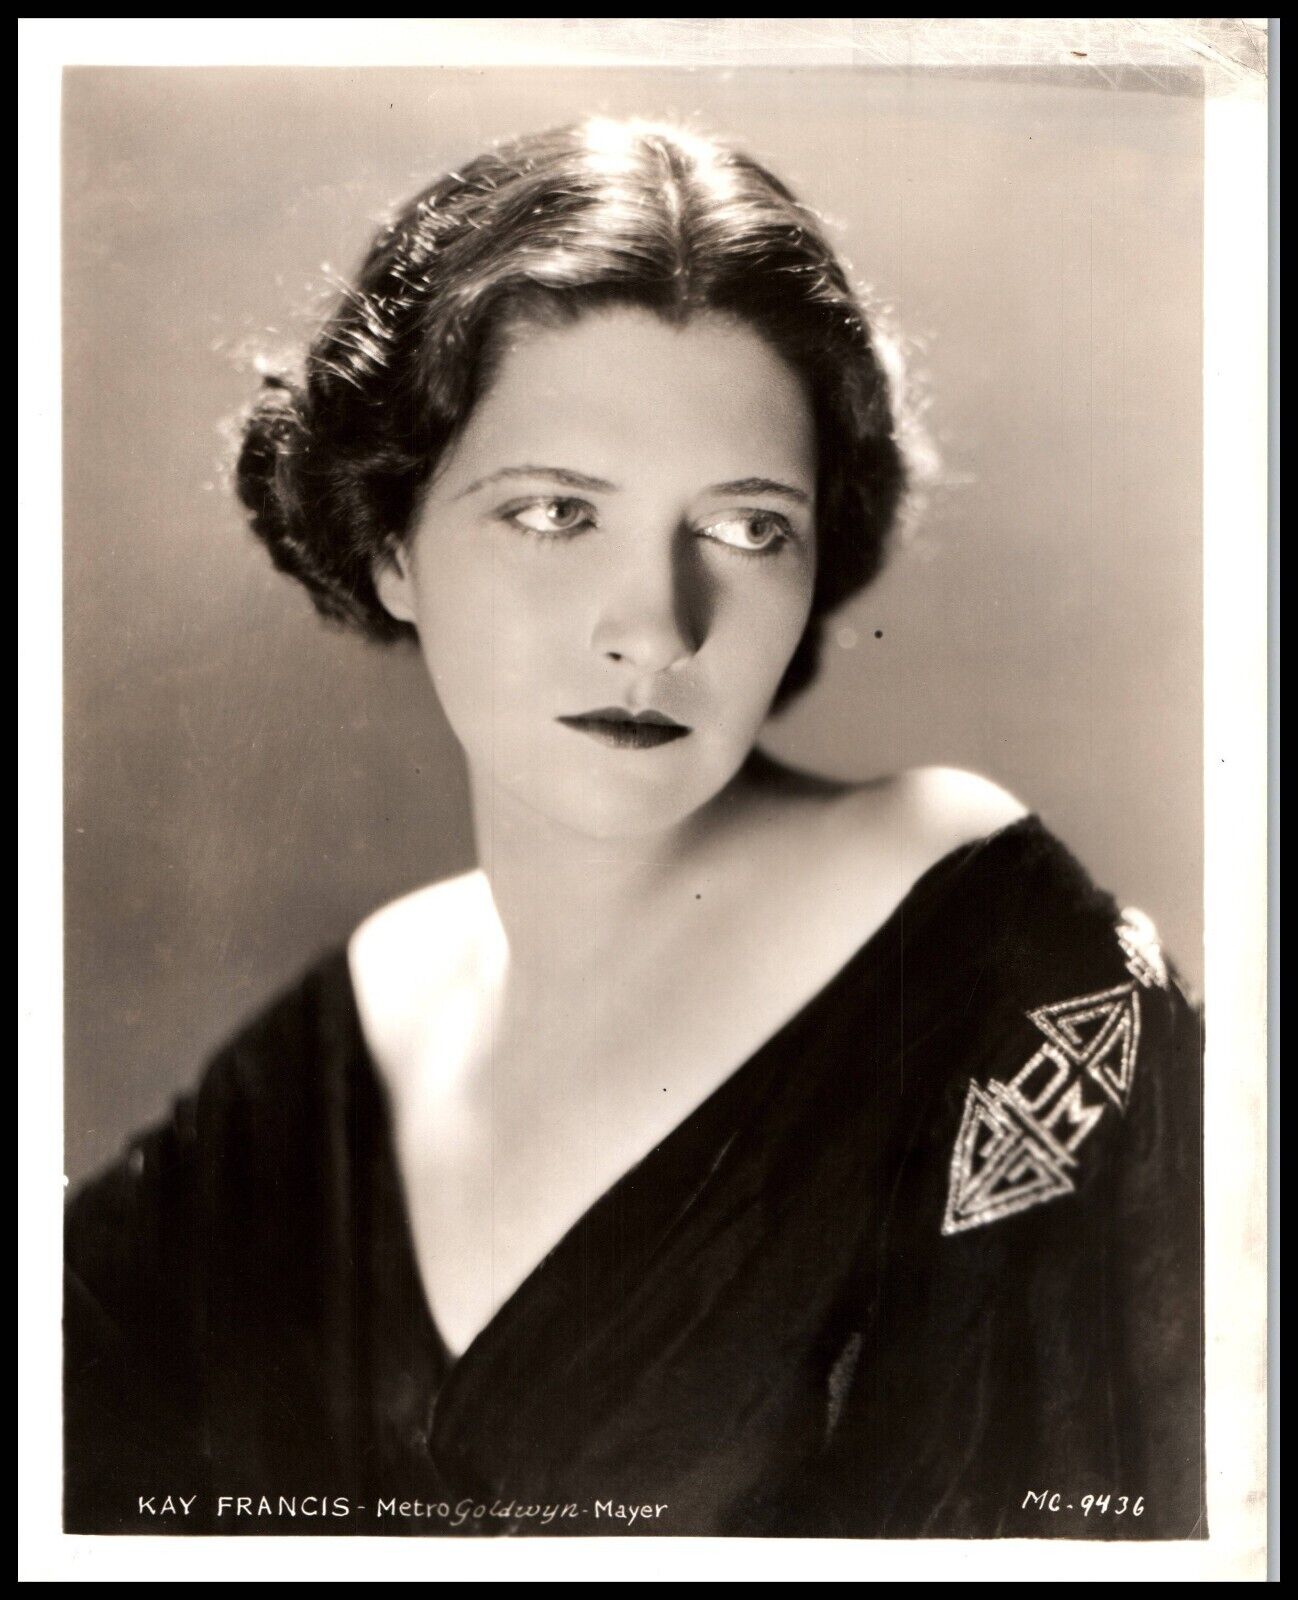 Hollywood Beauty KAY FRANCIS STUNNING PORTRAIT STYLISH POSE 1930s Photo 666